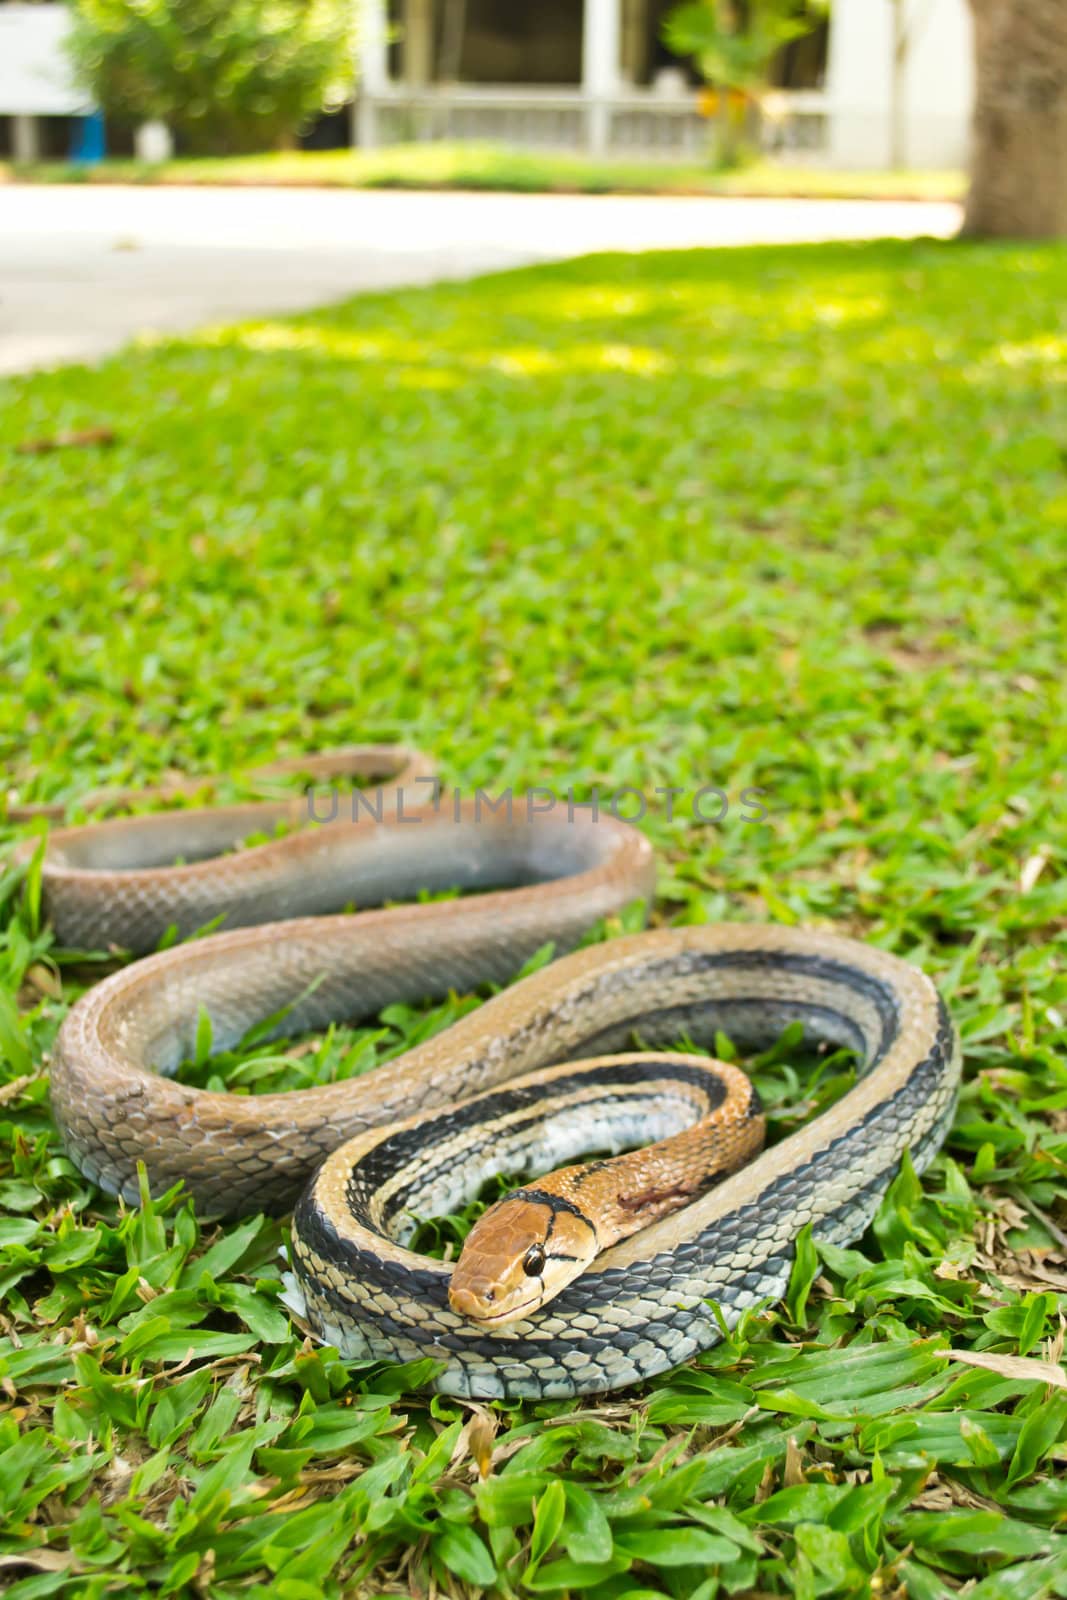 Snakes, venomous reptiles